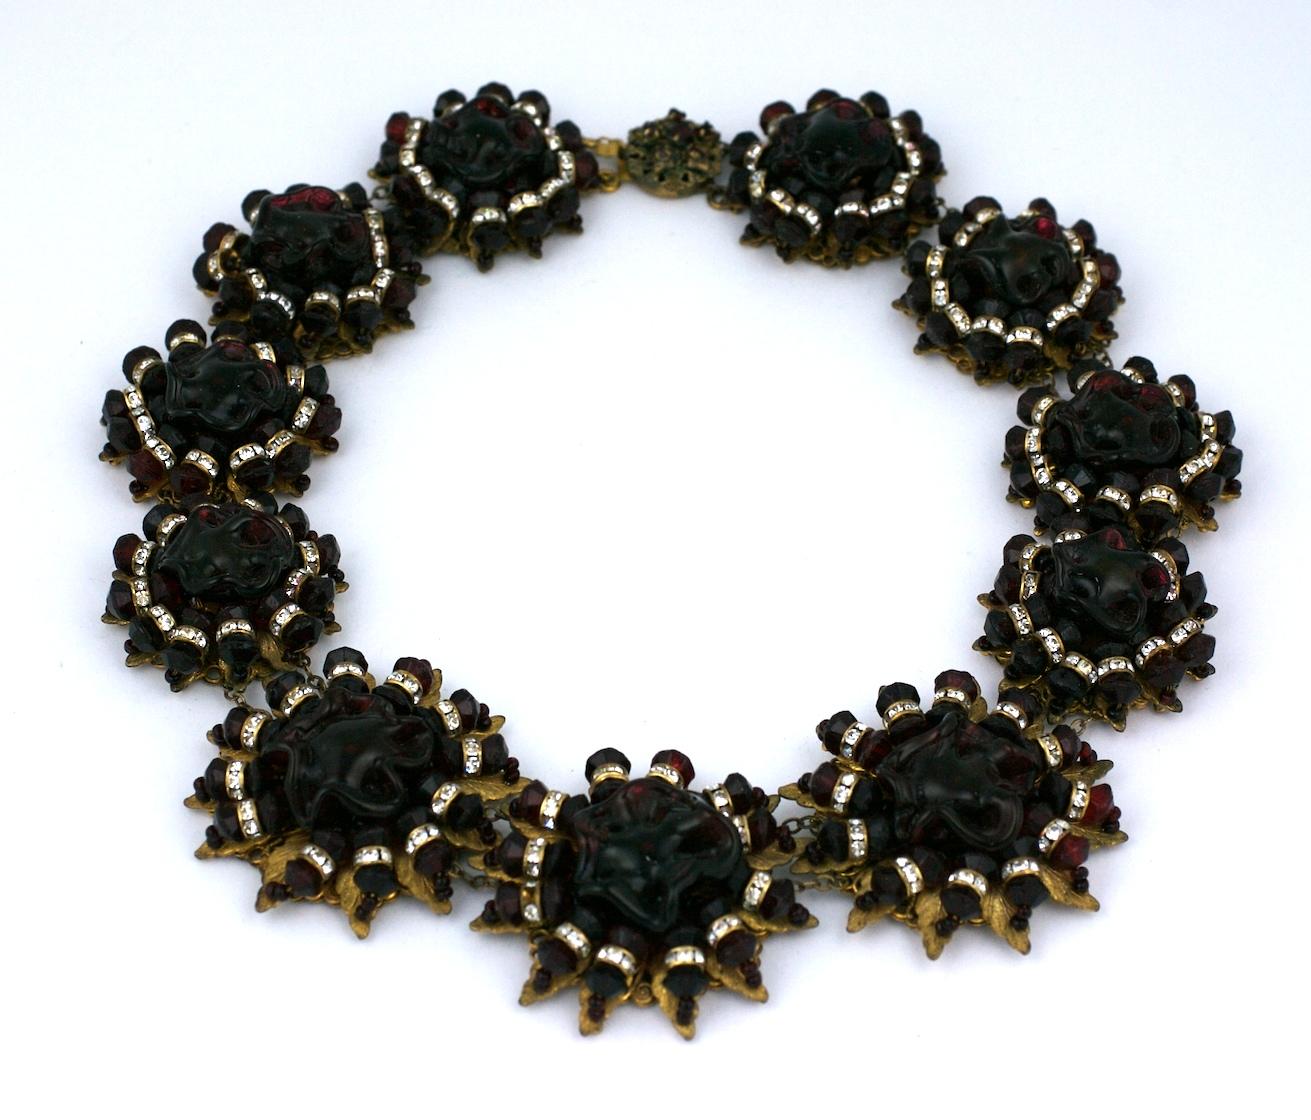 Exceptionnel collier de collection Miriam Haskell en rubis profond et pavé rondelle composé de stations floriformes graduées avec des centres de perles de fleurs en pate de verre faites à la main et brodées dans des motifs ensoleillés avec des